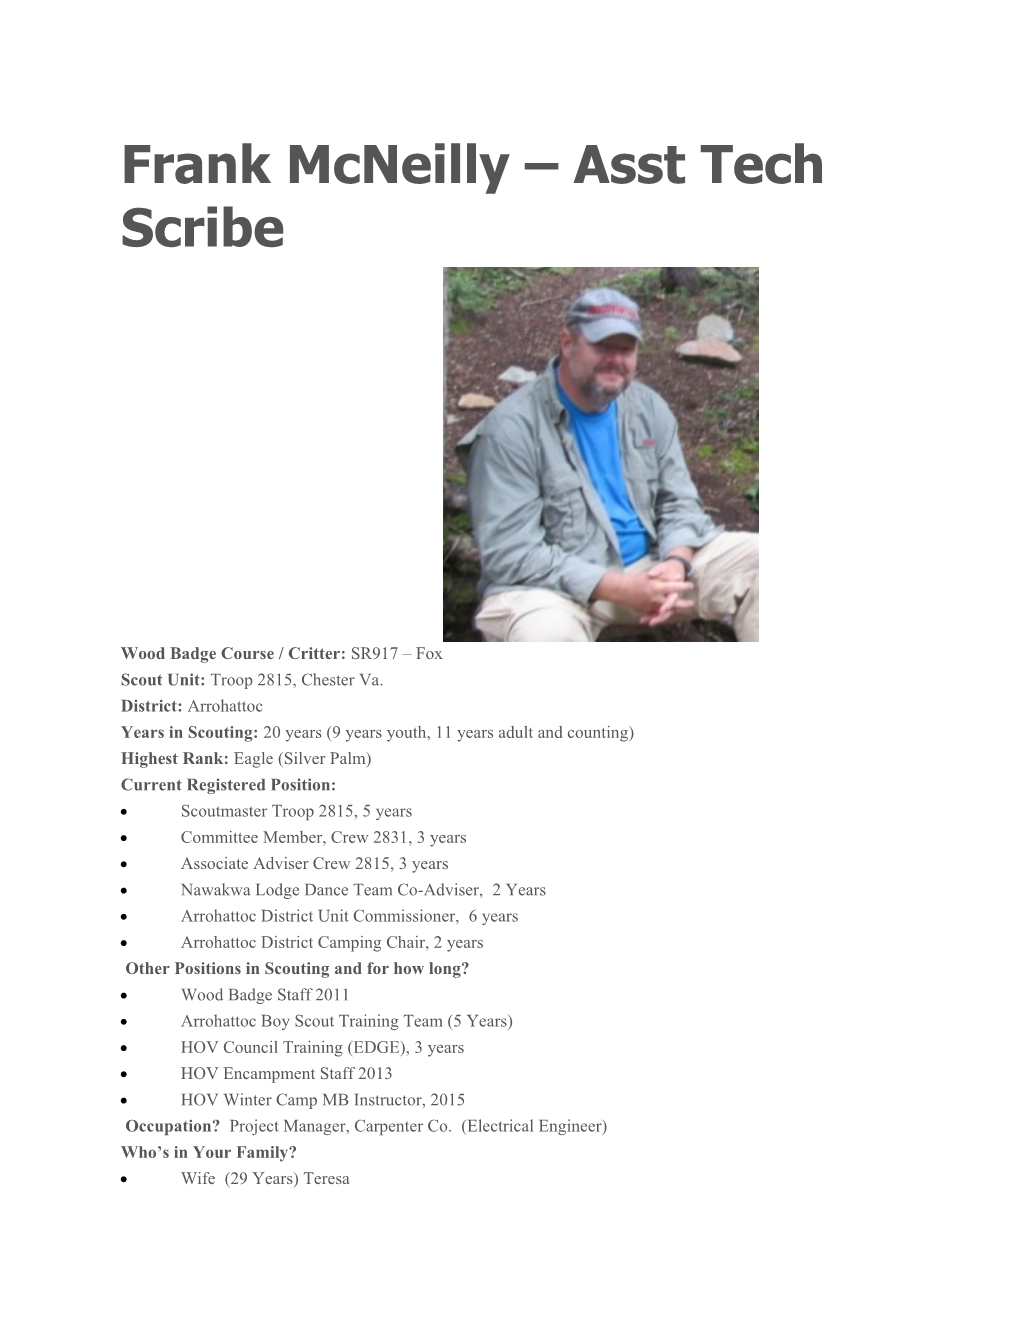 Frank Mcneilly Asst Tech Scribe